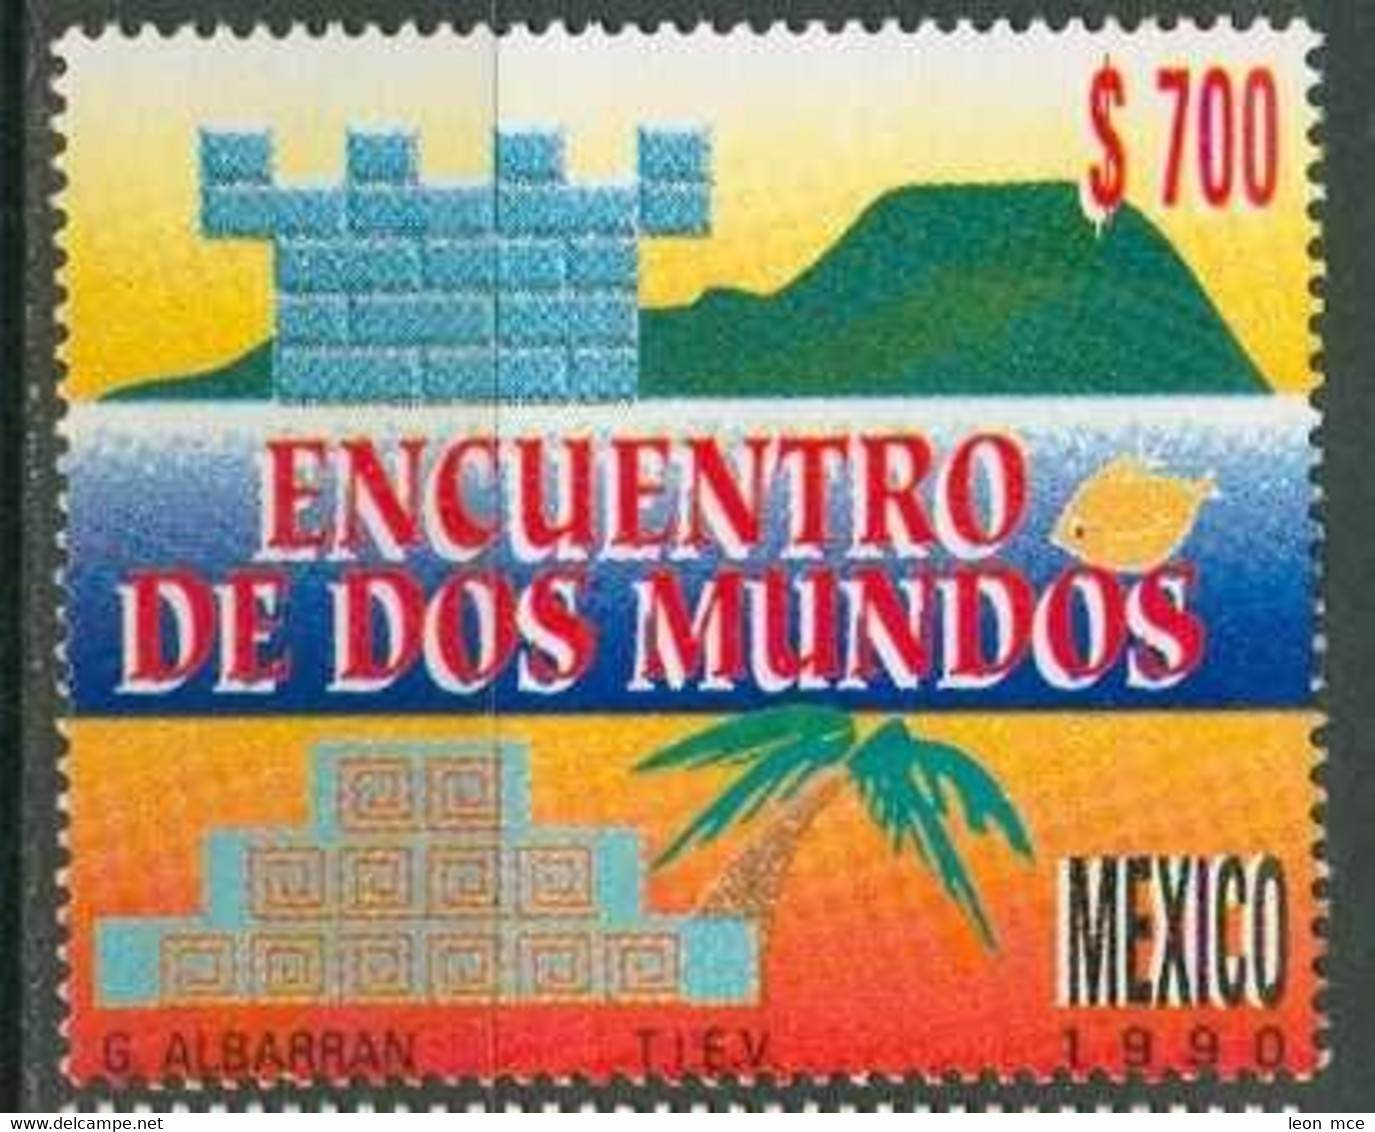 1990 MÉXICO ENCUENTRO DE DOS MUNDOS Sc. 1668 MNH, Discovery Of America - Mexiko